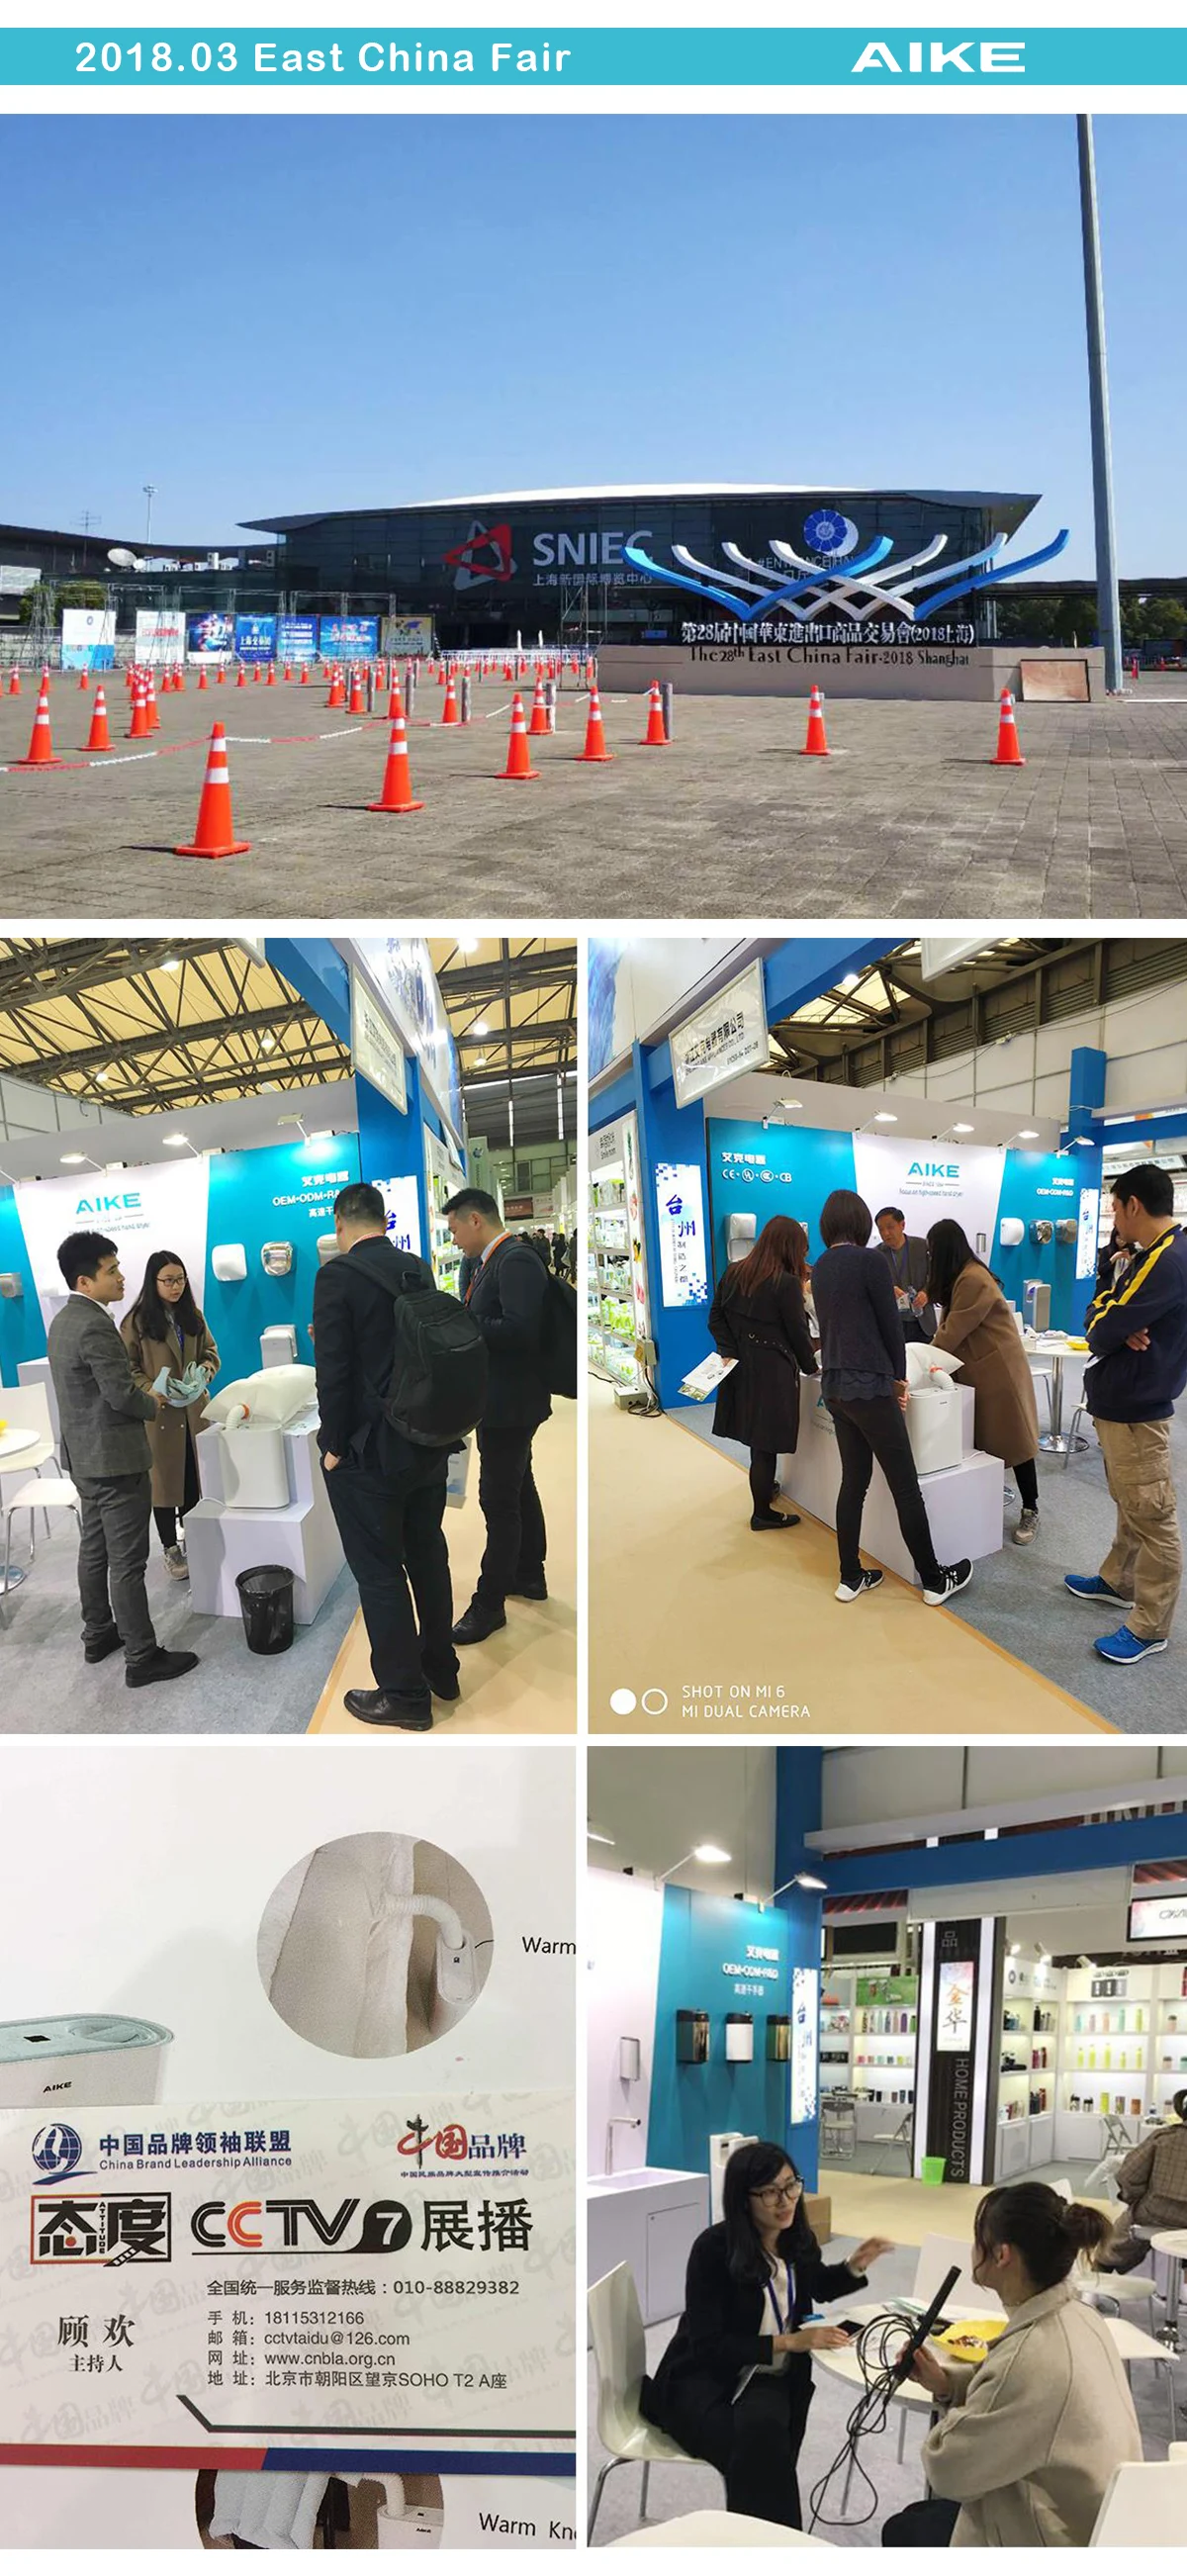 AIKE Exhibition on East China Fair 2018